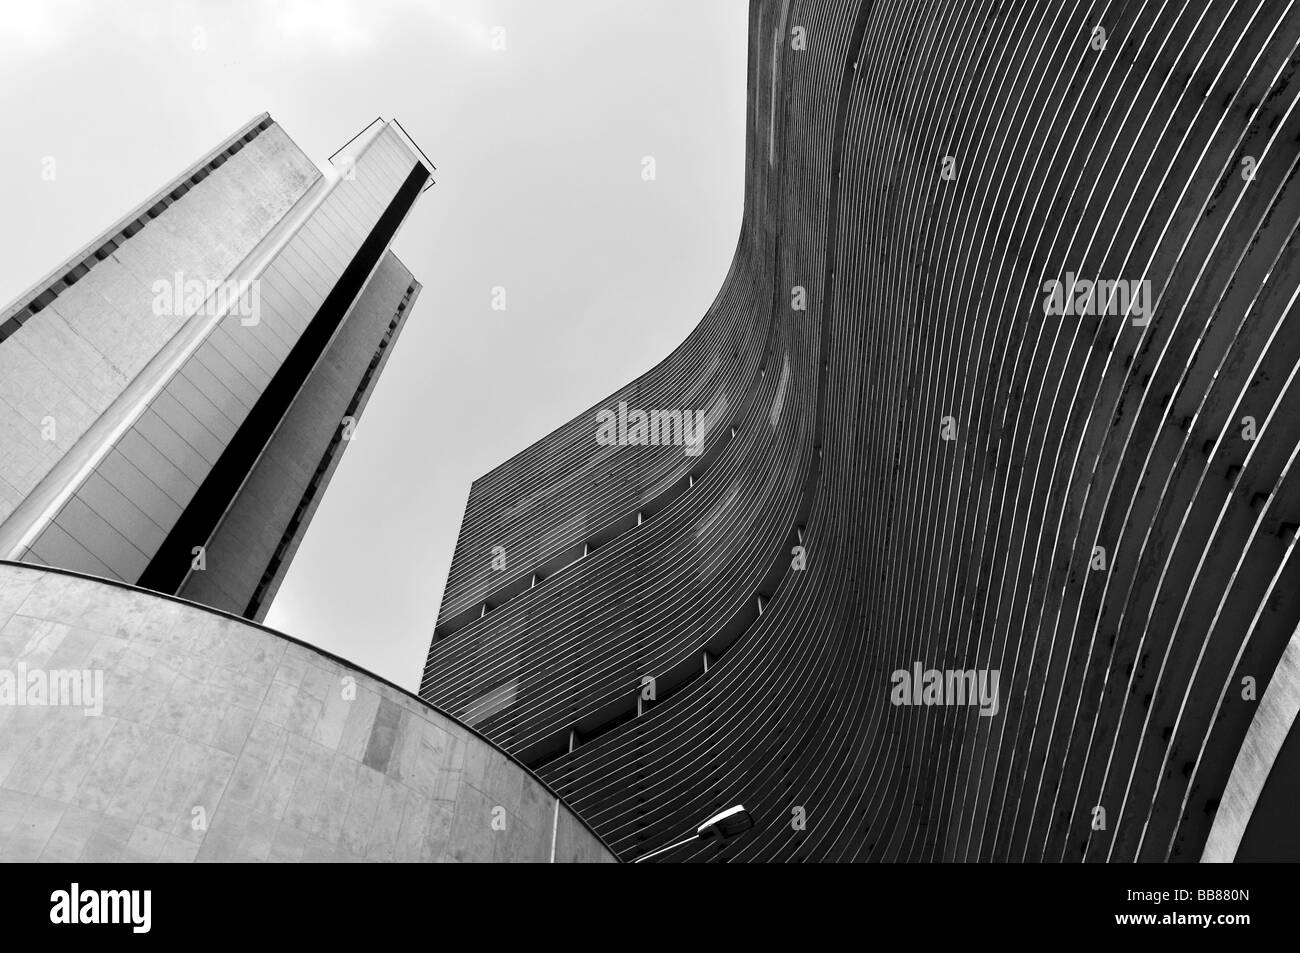 COPAN by architect Oscar Niemeyer, Sao Paulo, Brazil, South America Stock Photo